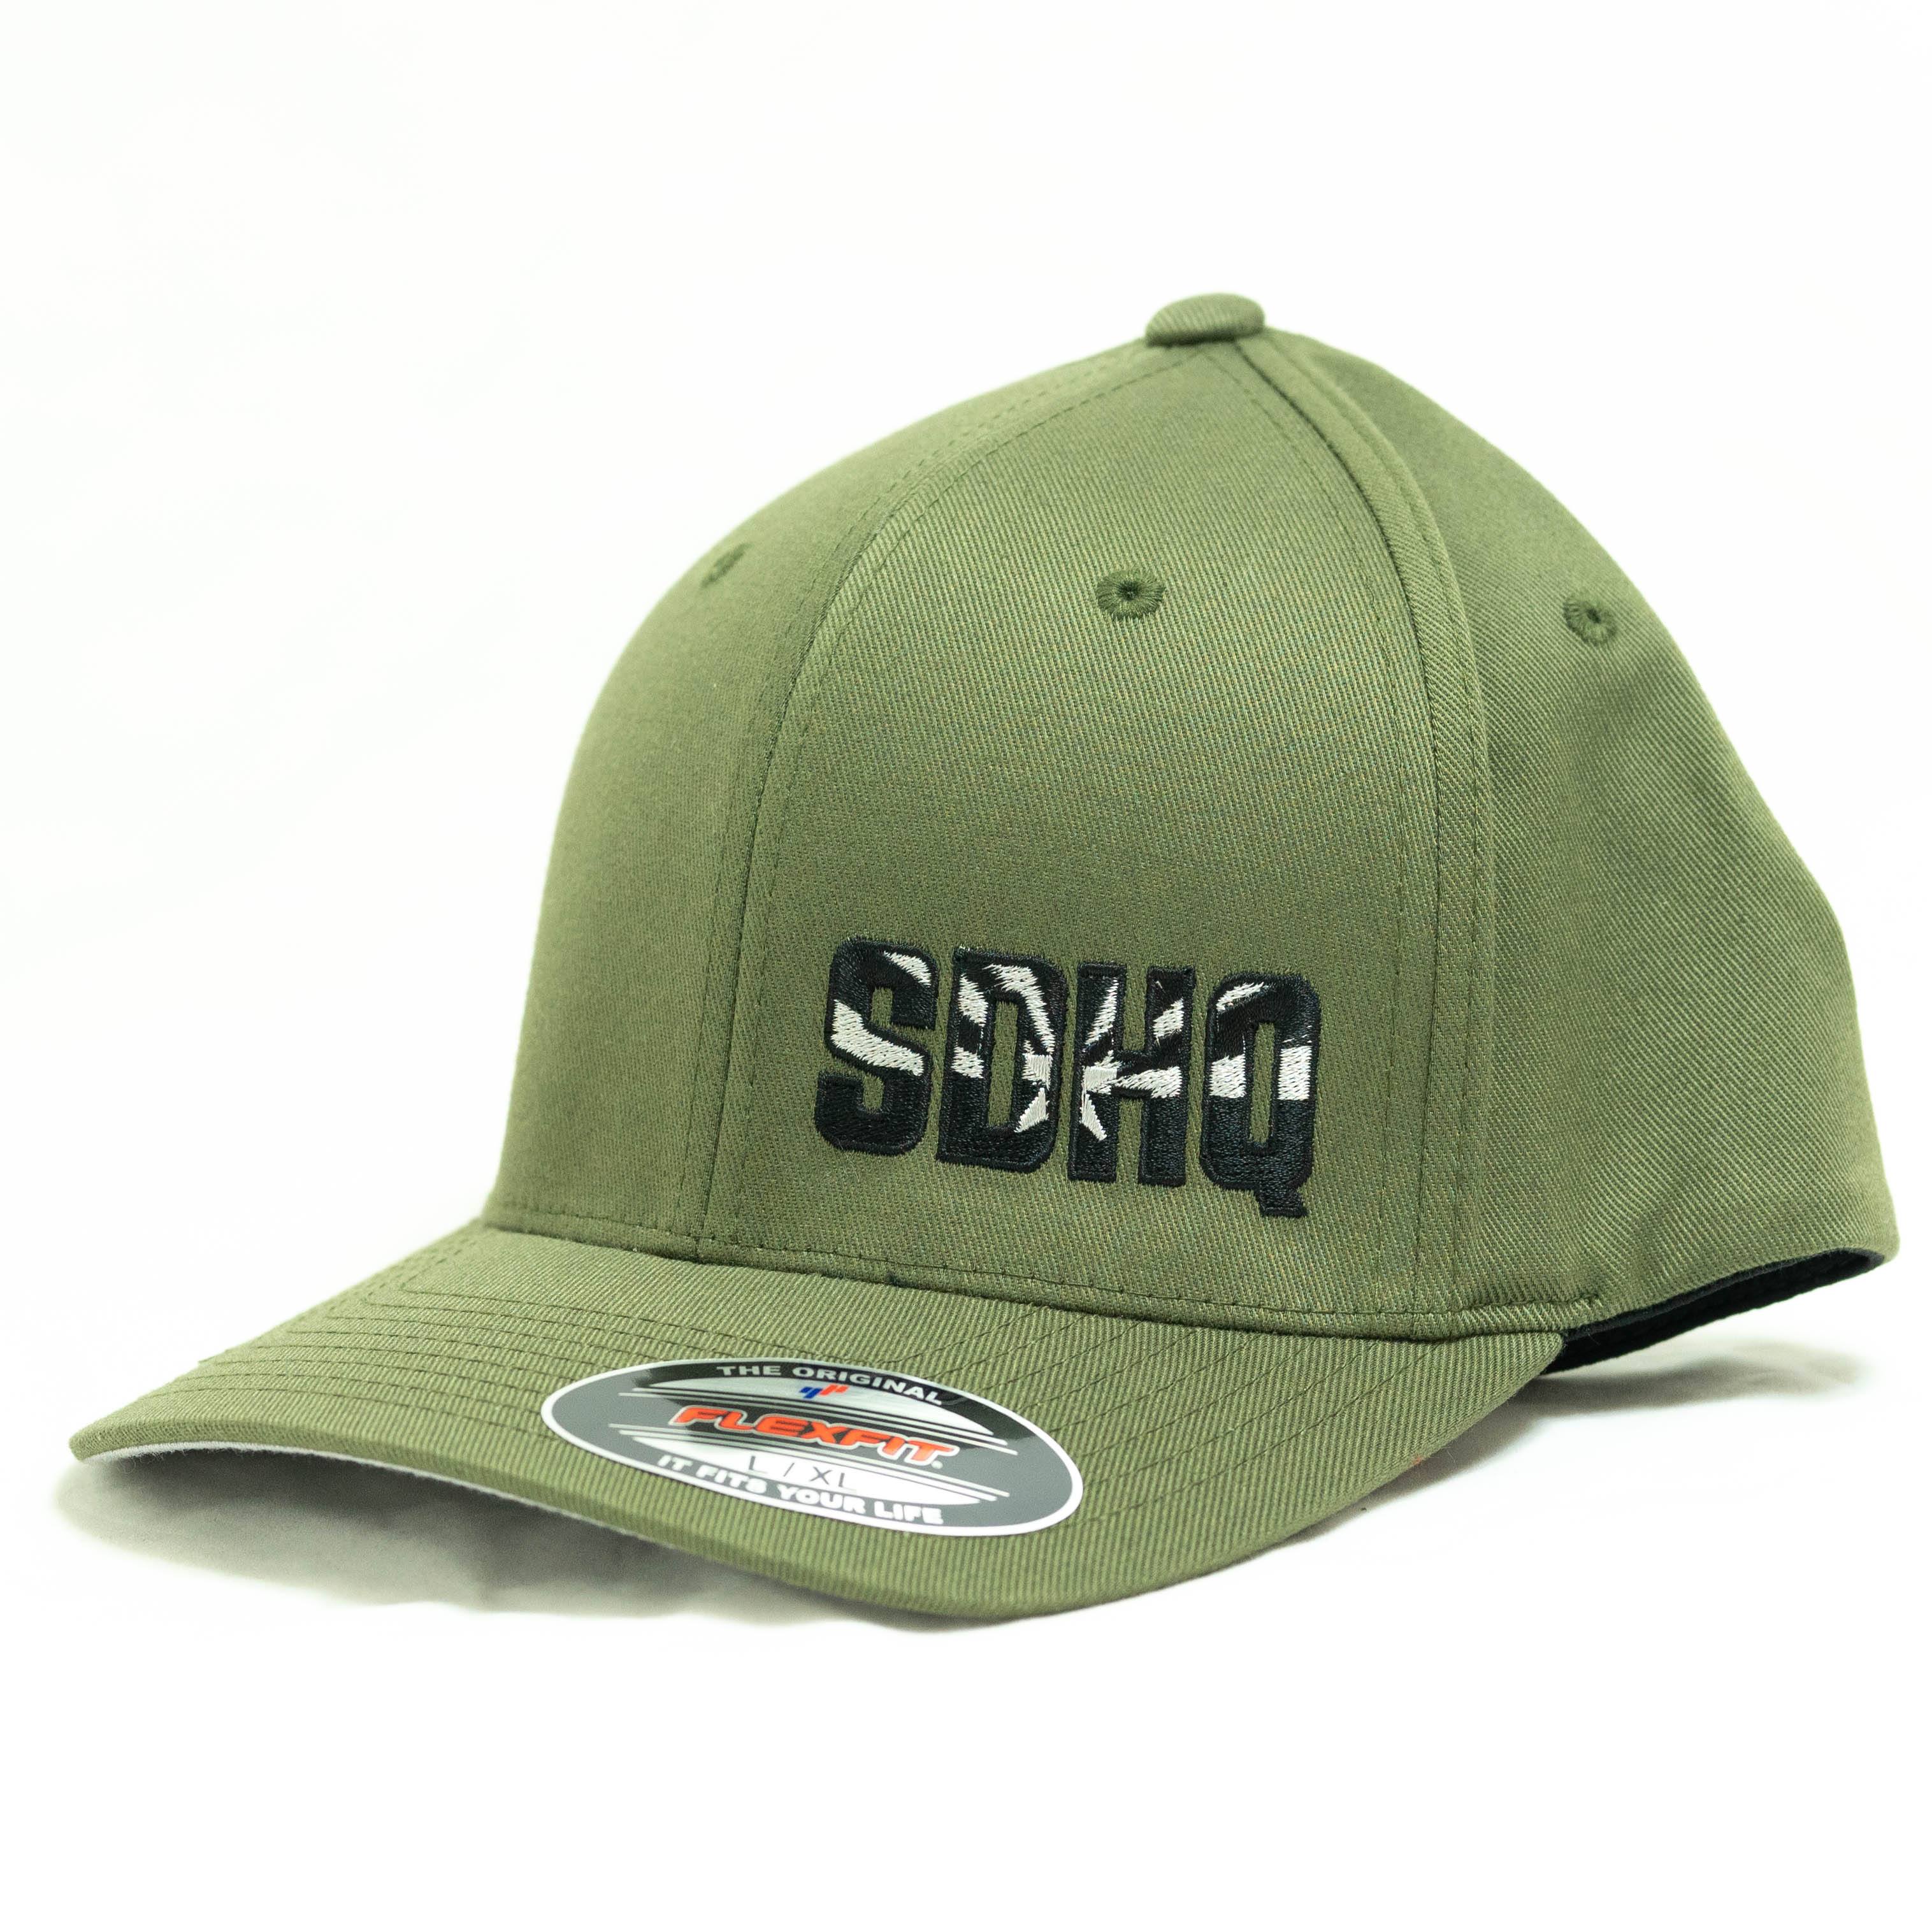 SDHQ Arizona OD Green Flex Fit Hat Apparel SDHQ Off Road